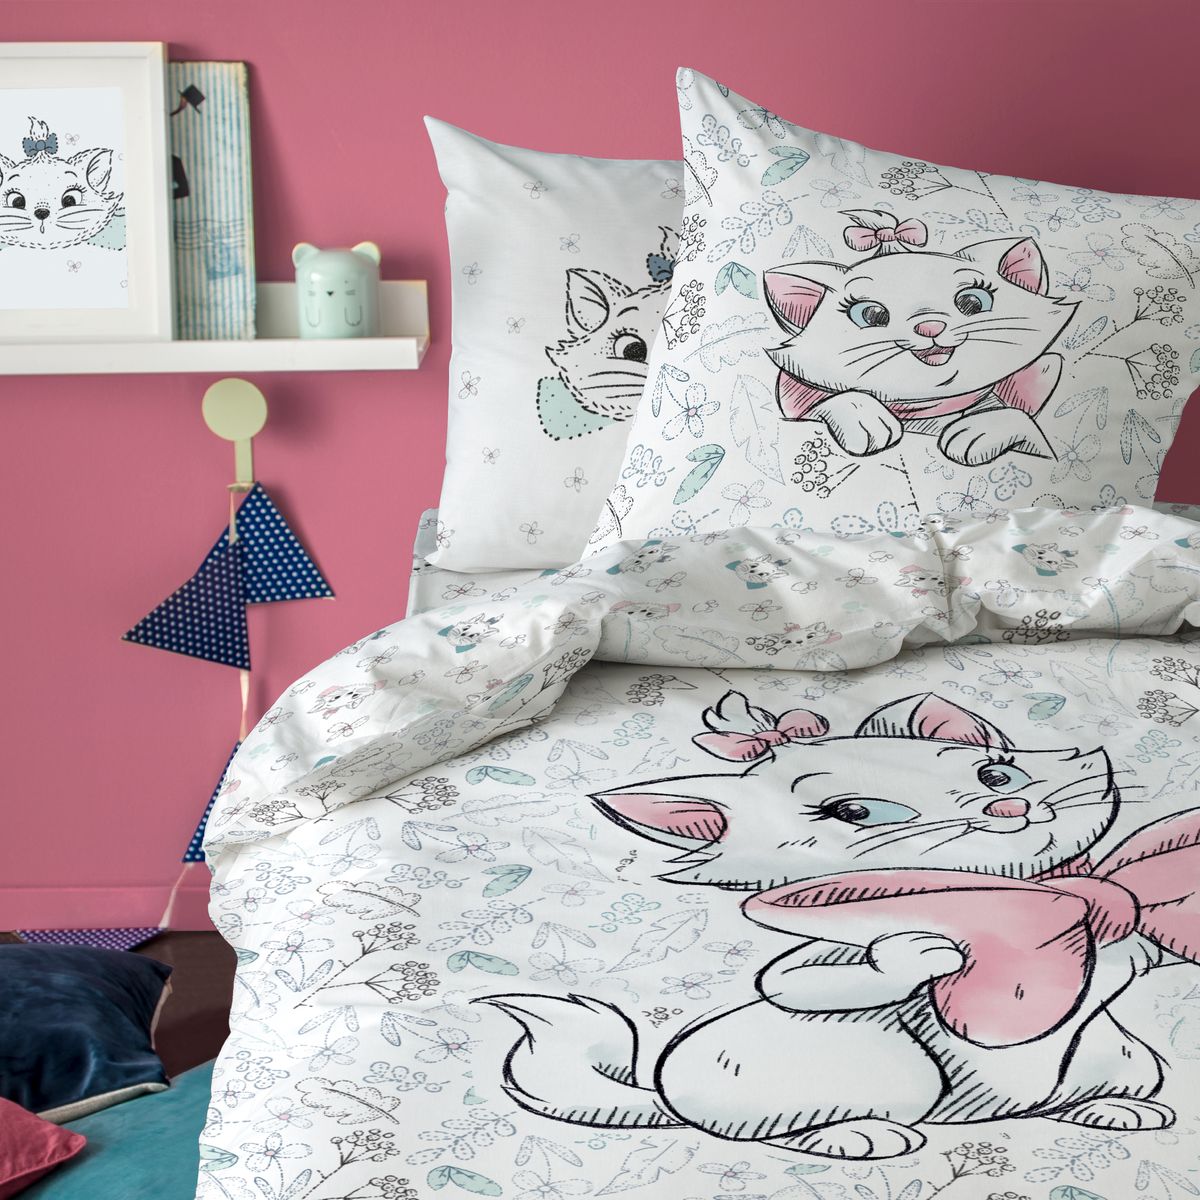 Minnie Mouse Beautiful Life Parure de lit réversible 100/% Coton Gris//Rose 140 x 200 cm